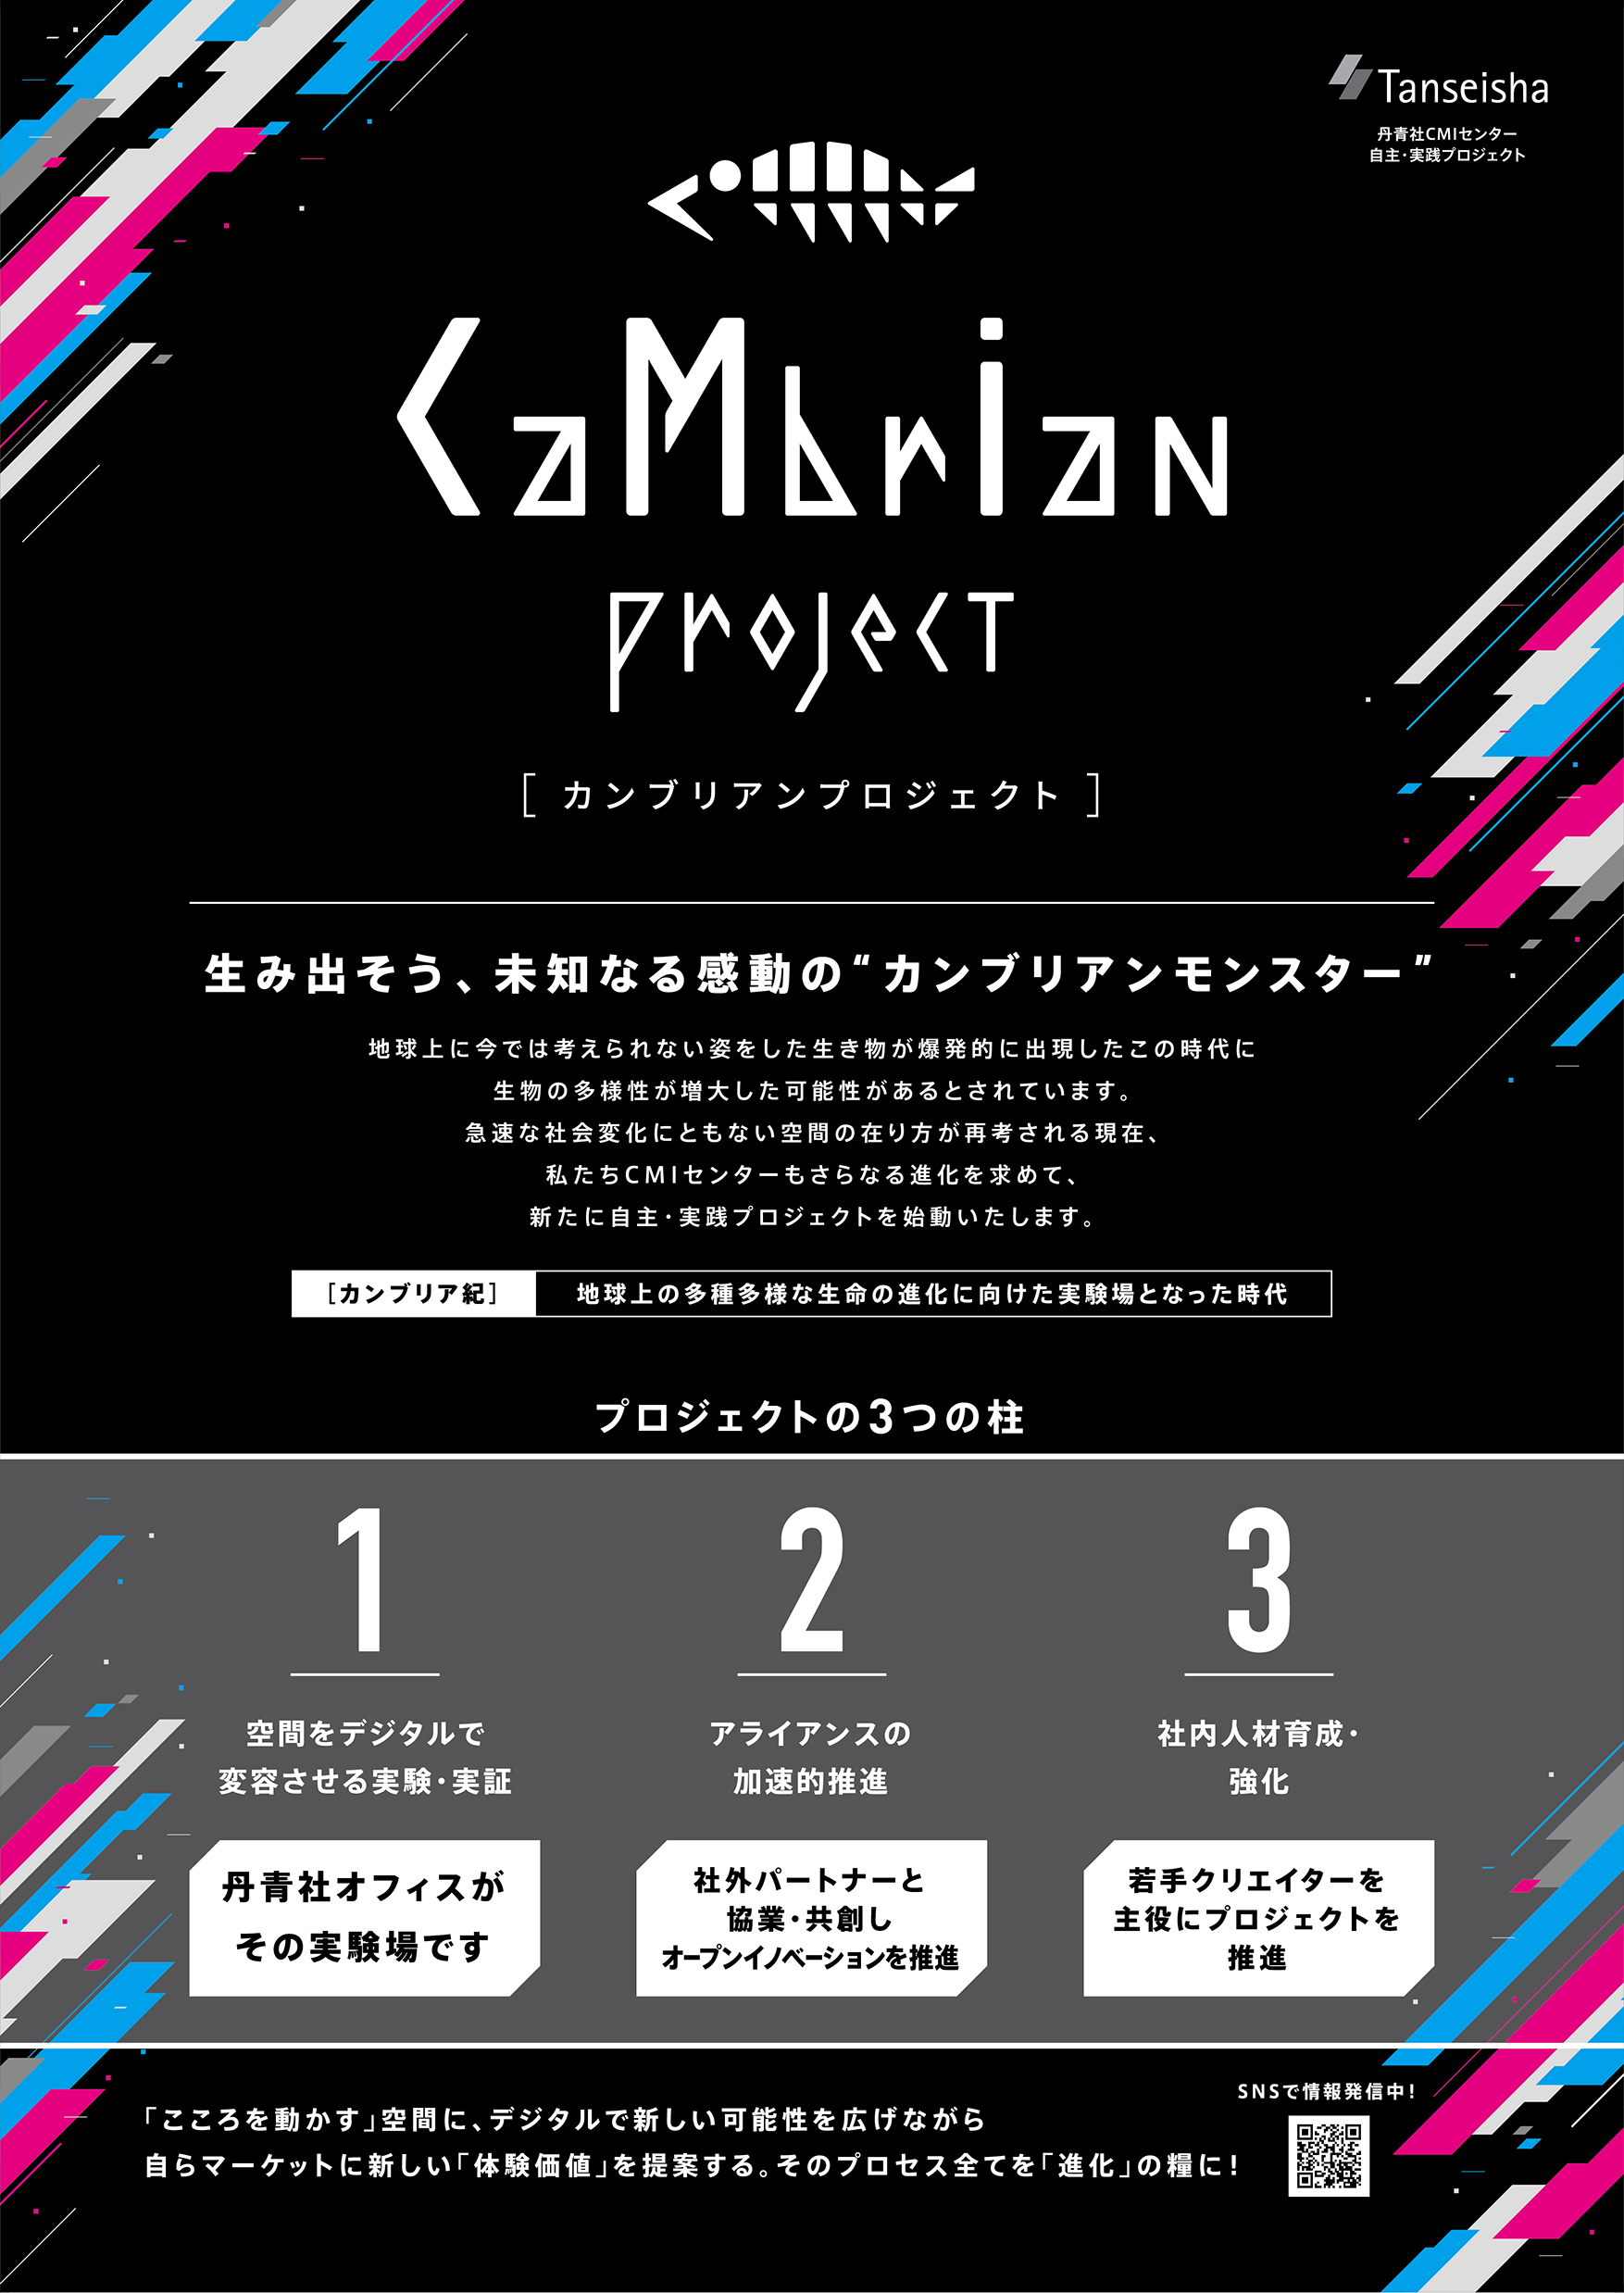 「CaMbrIan project（カンブリアンプロジェクト）」ポスター